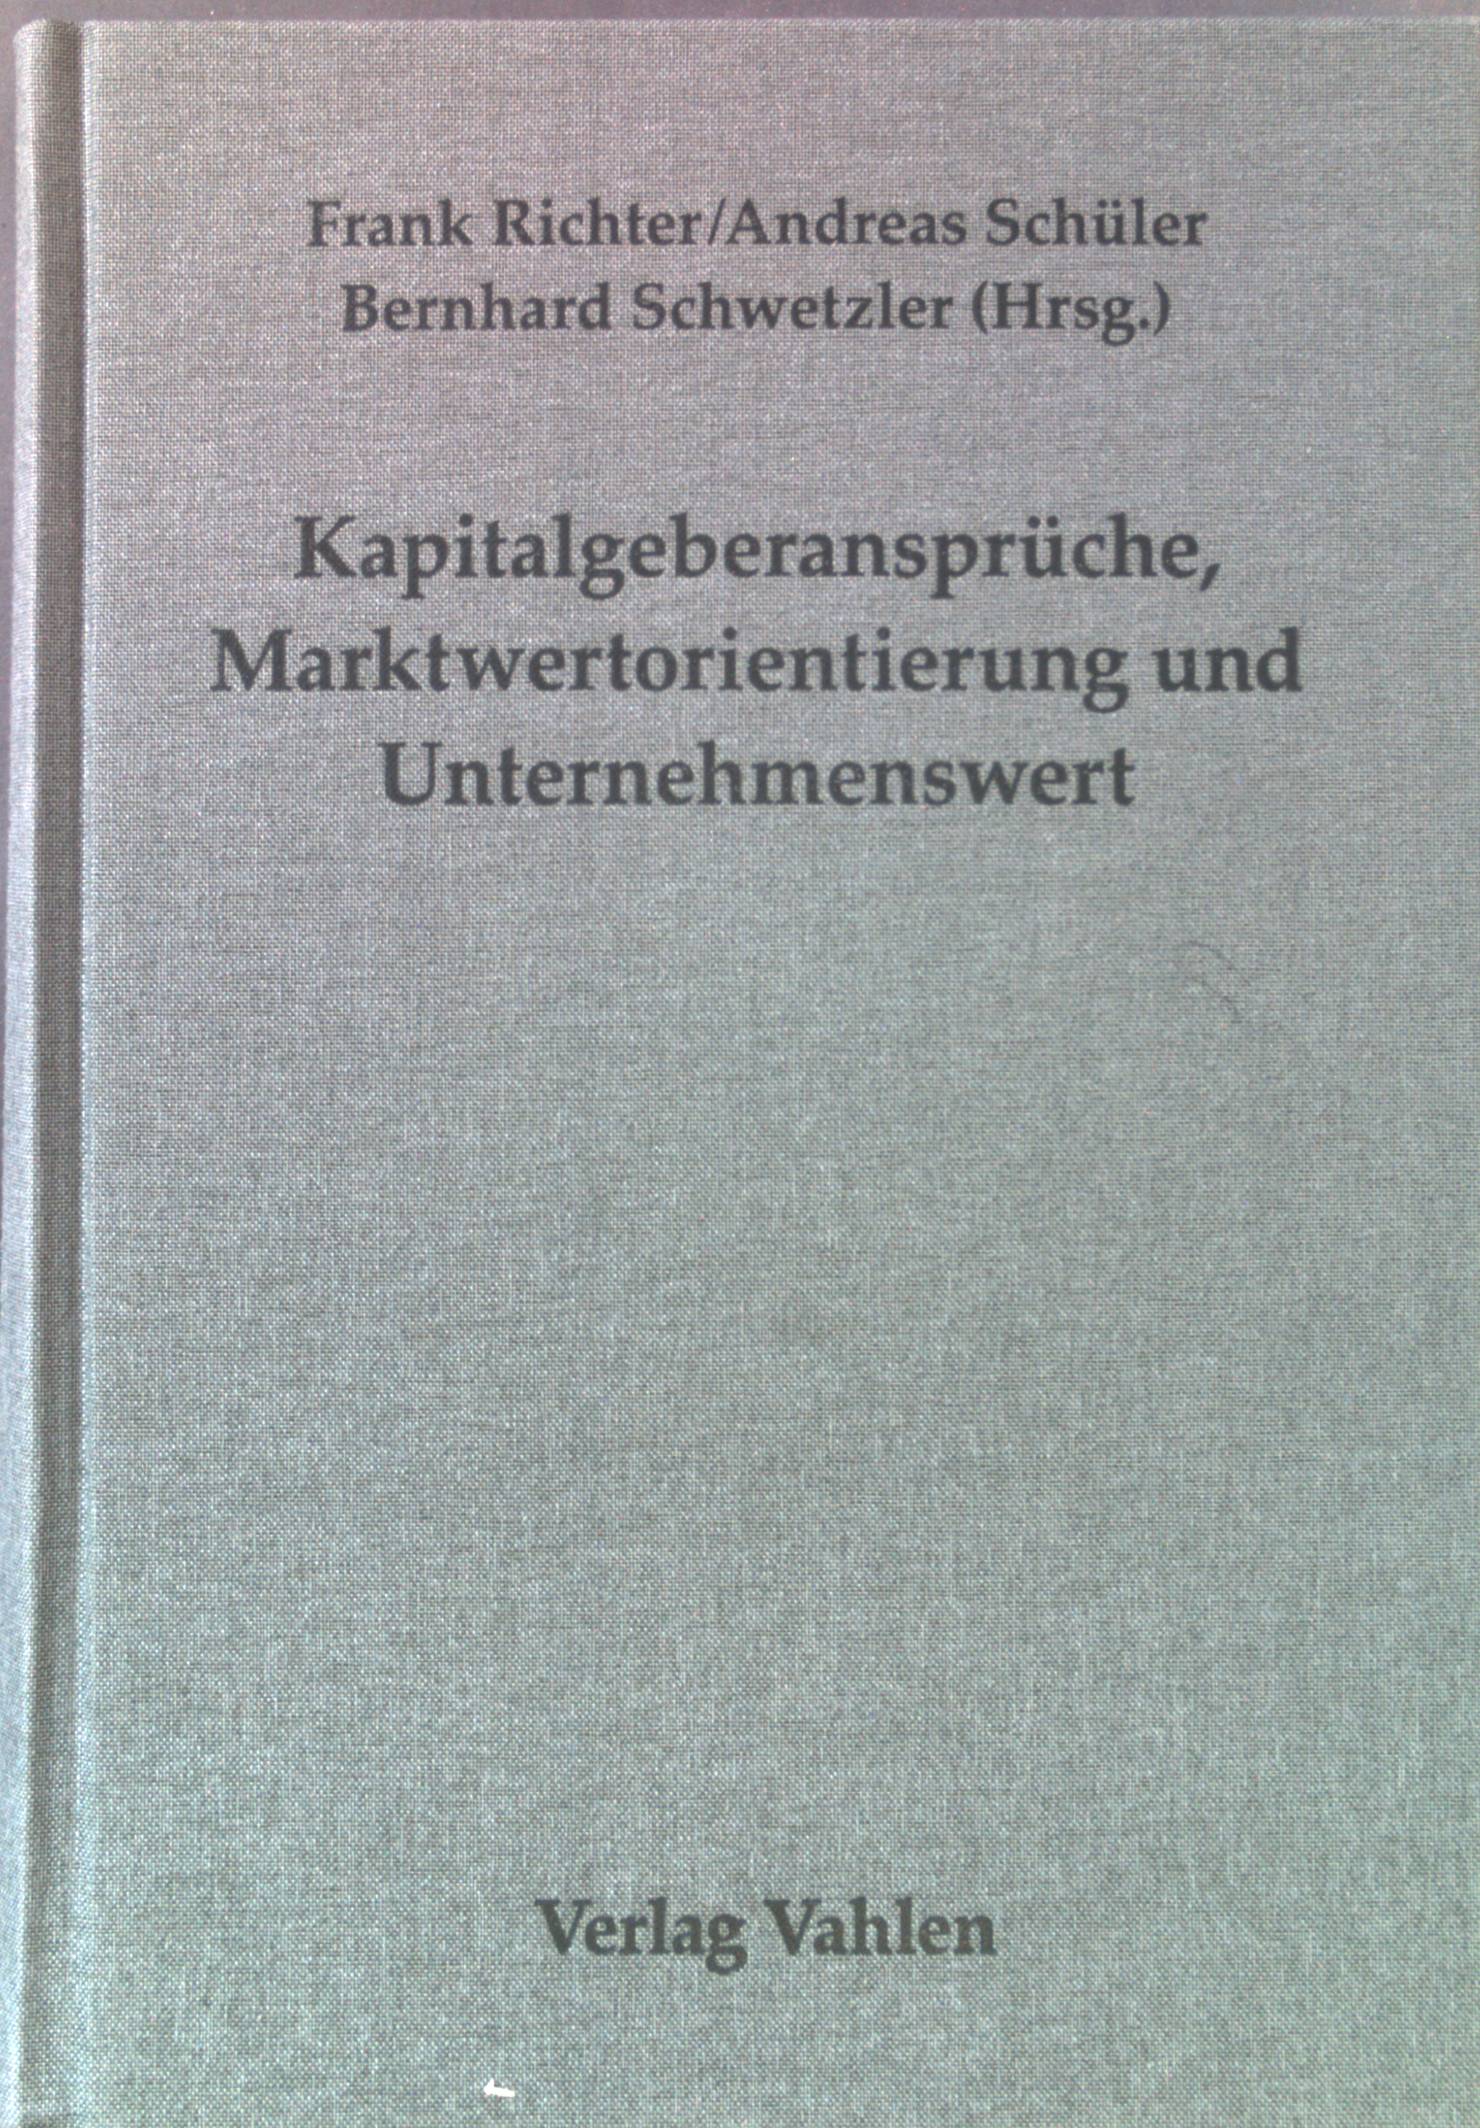 Kapitalgeberansprüche, Marktwertorientierung und Unternehmenswert : Festschrift für Jochen Drukarczyk zum 65. Geburtstag. - Richter, Frank